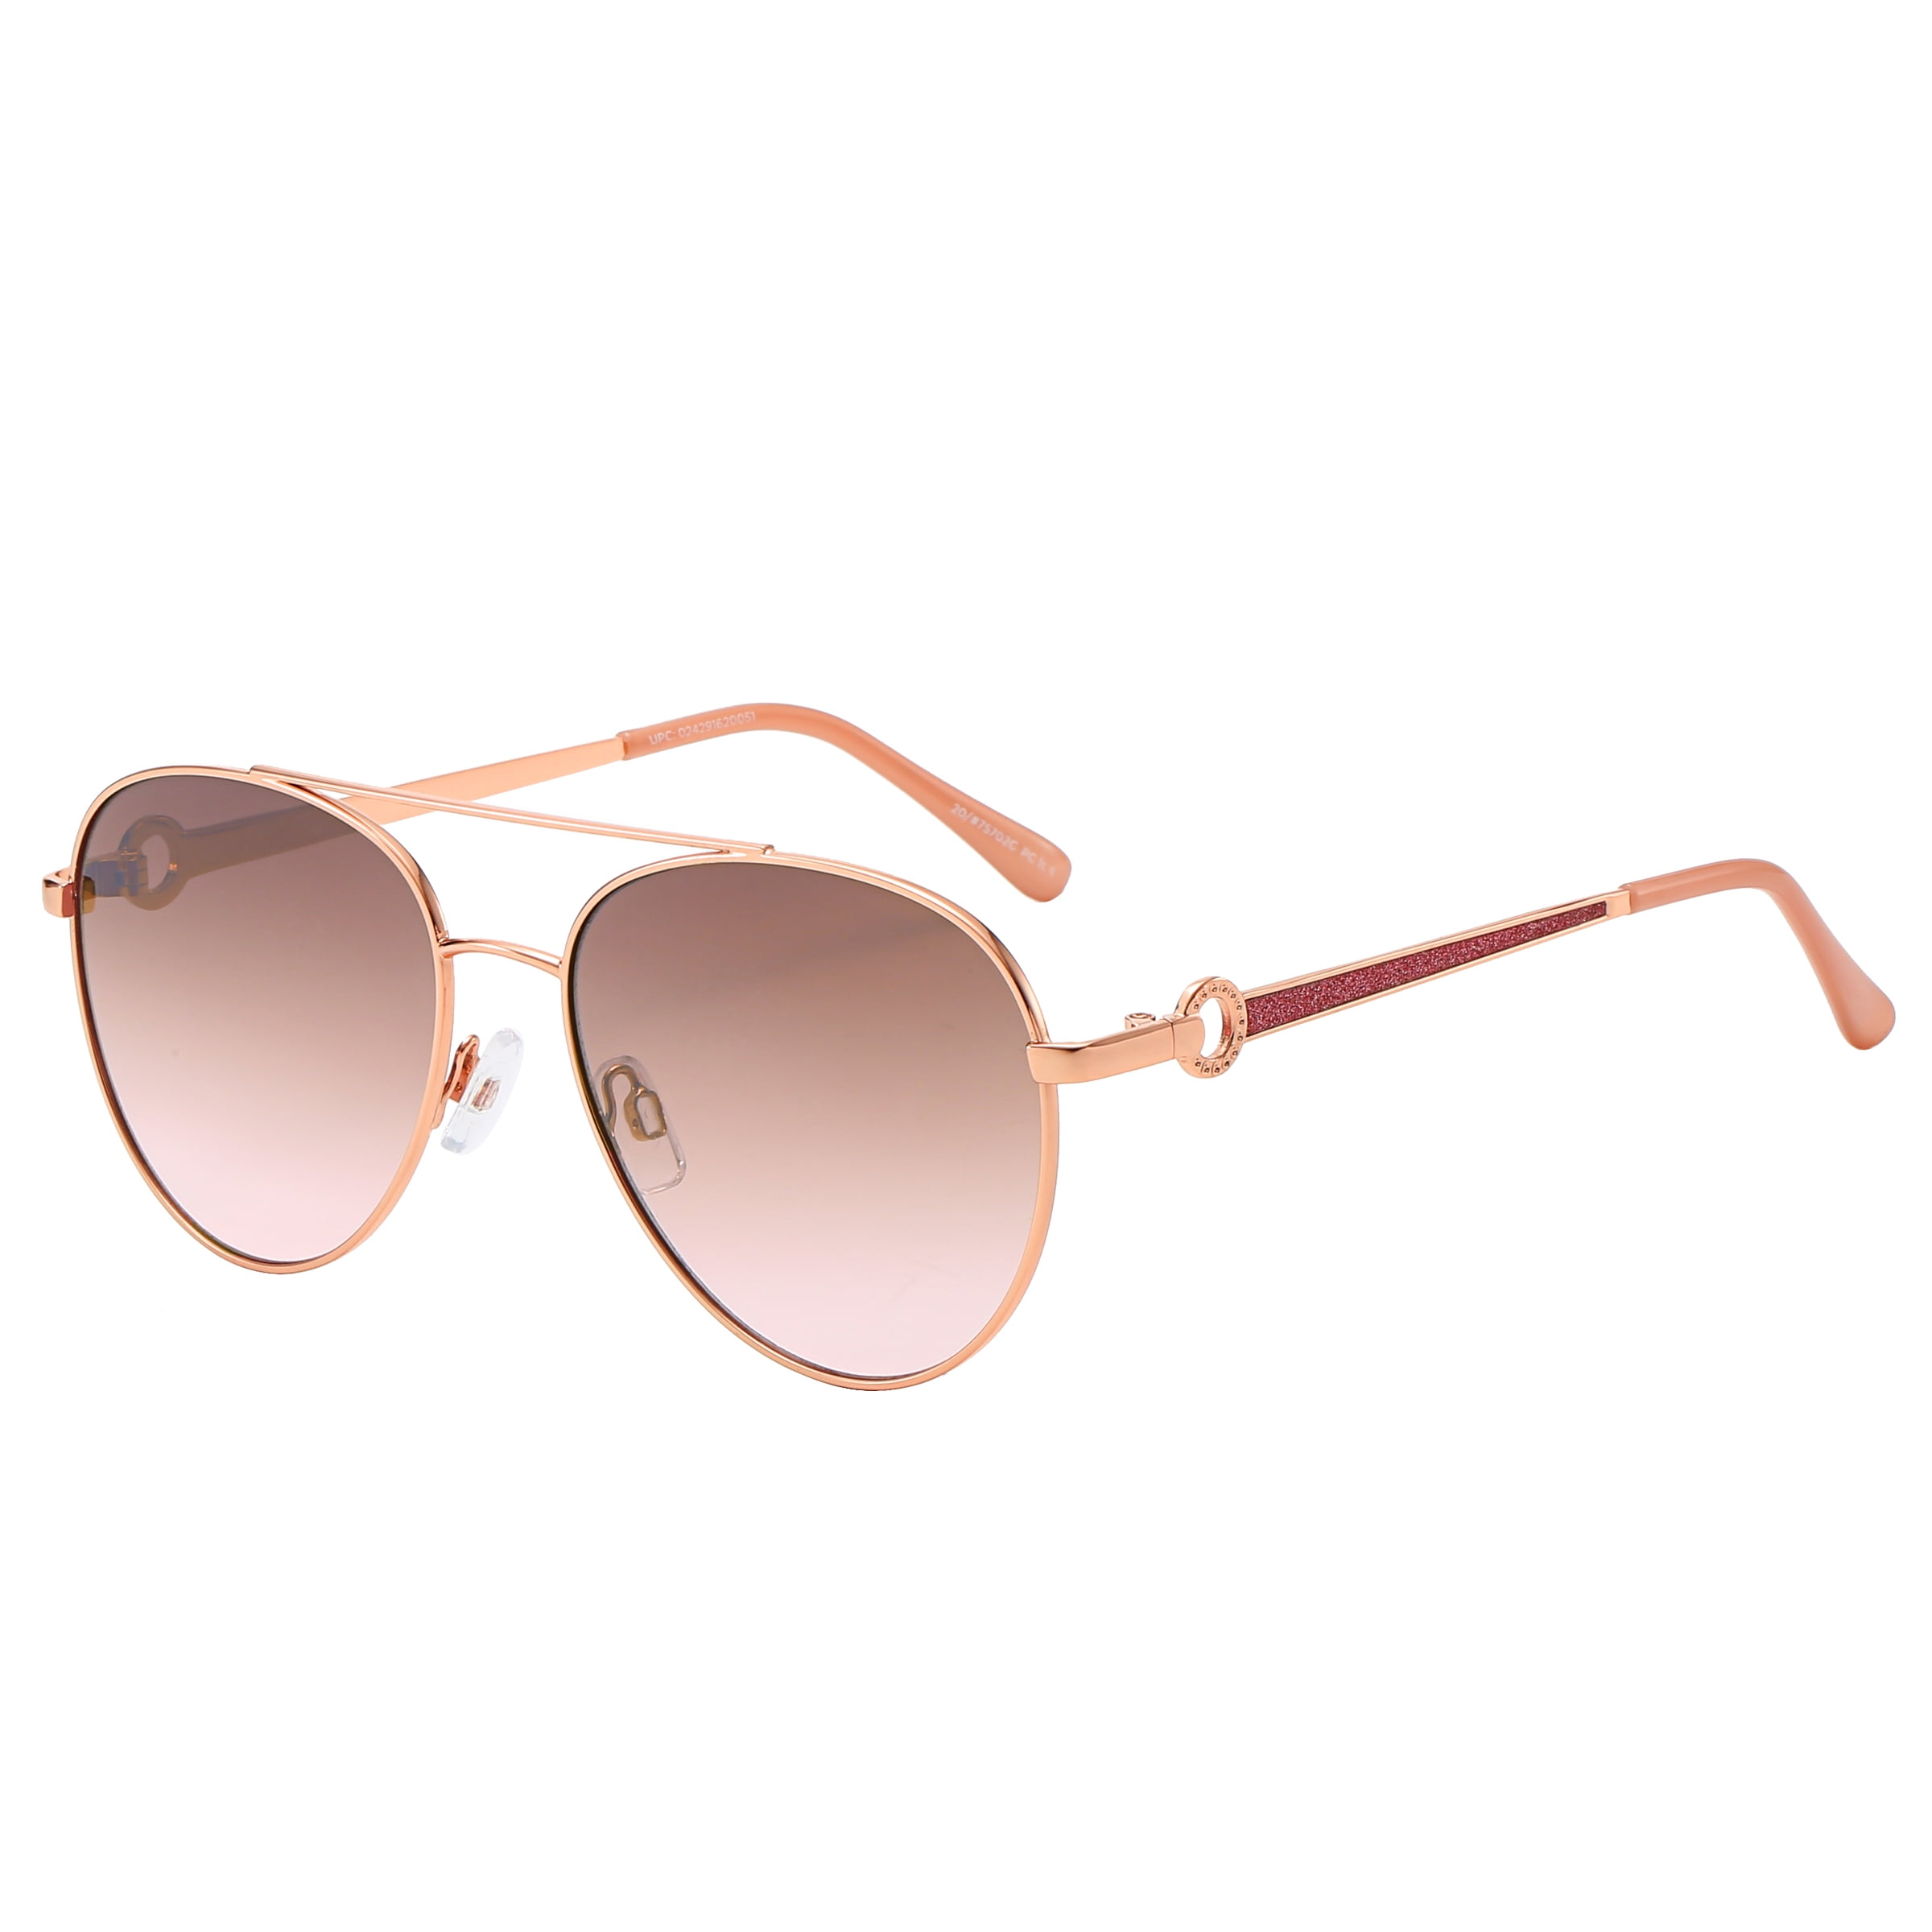 Piranha Eyewear Signature Gold Aviator Sunglasses for Women with